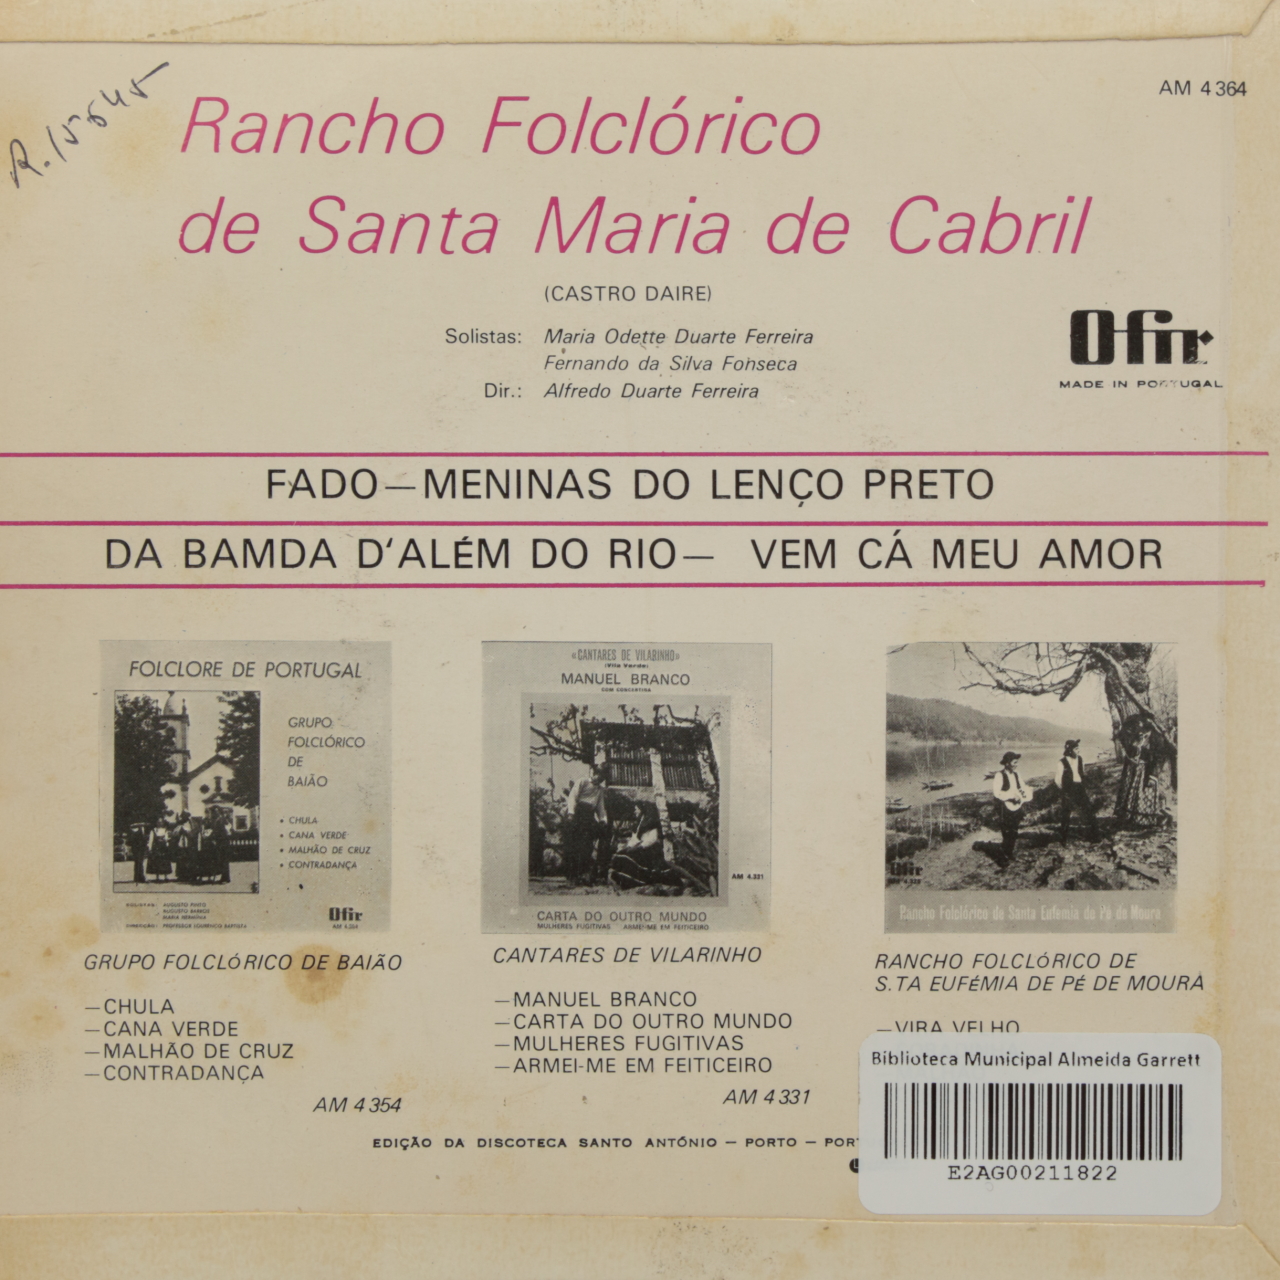 Rancho Folclórico de Santa Maria de Cabril